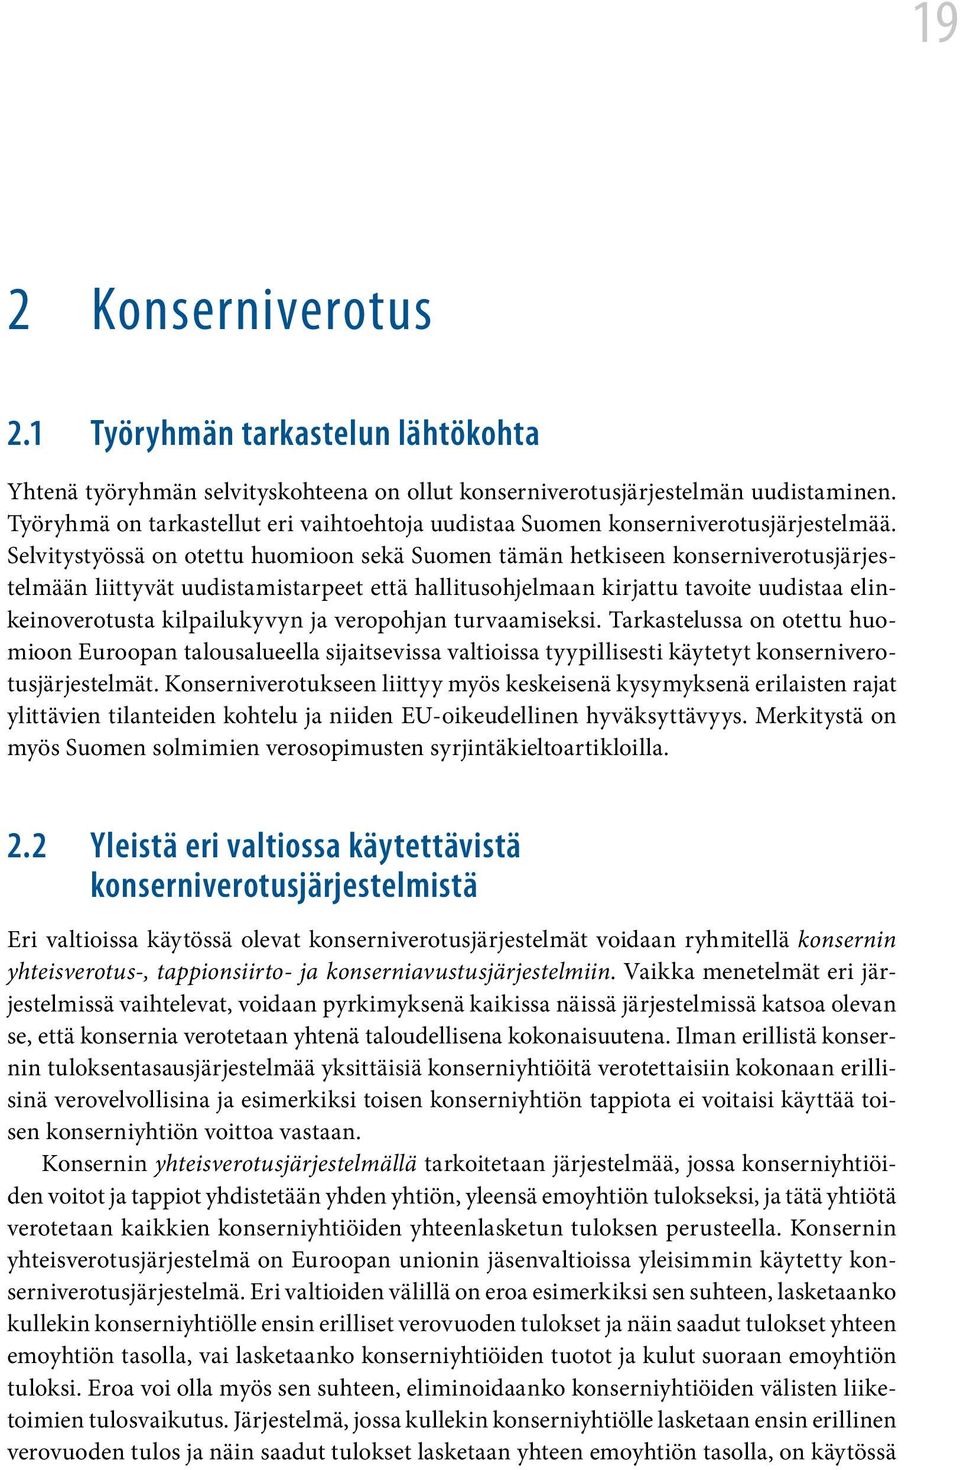 Selvitystyössä on otettu huomioon sekä Suomen tämän hetkiseen konserniverotusjärjestelmään liittyvät uudistamistarpeet että hallitusohjelmaan kirjattu tavoite uudistaa elinkeinoverotusta